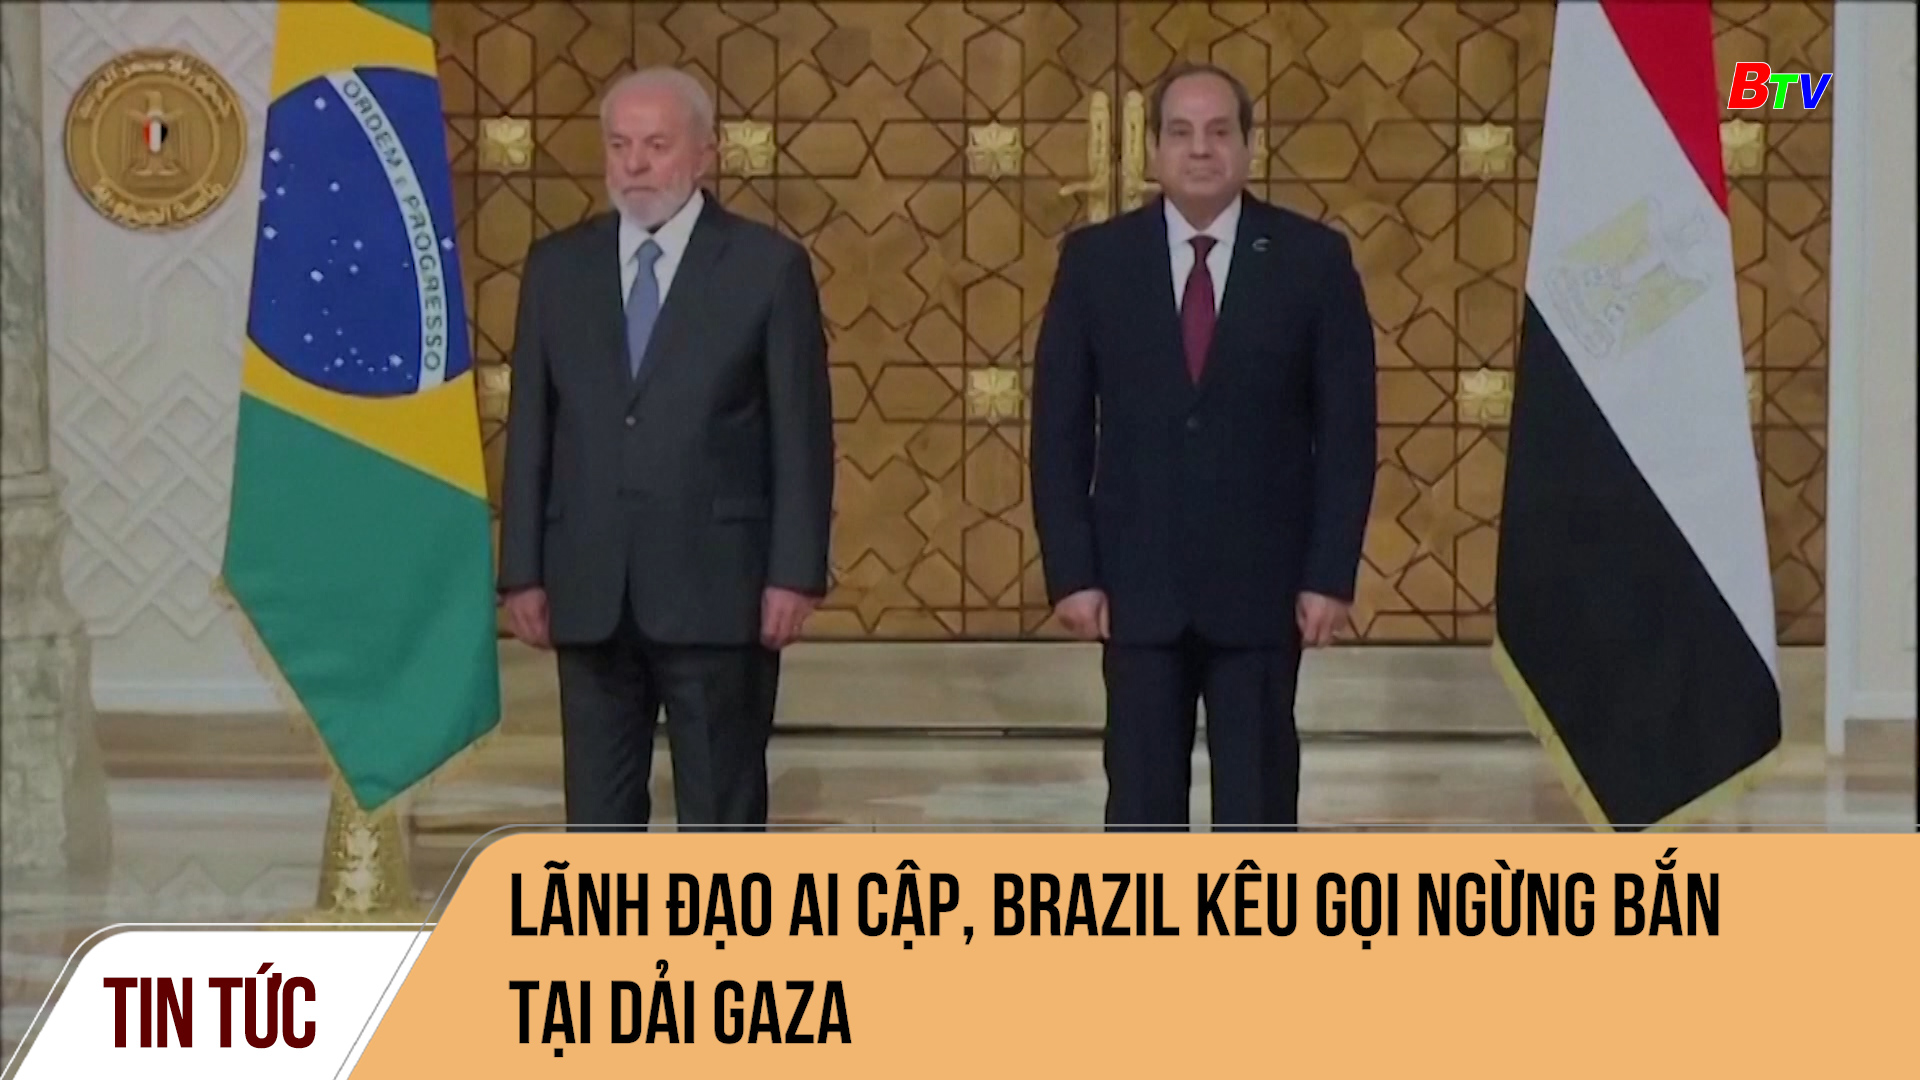 Lãnh đạo Ai Cập, Brazil kêu gọi ngừng bắn tại dải Gaza